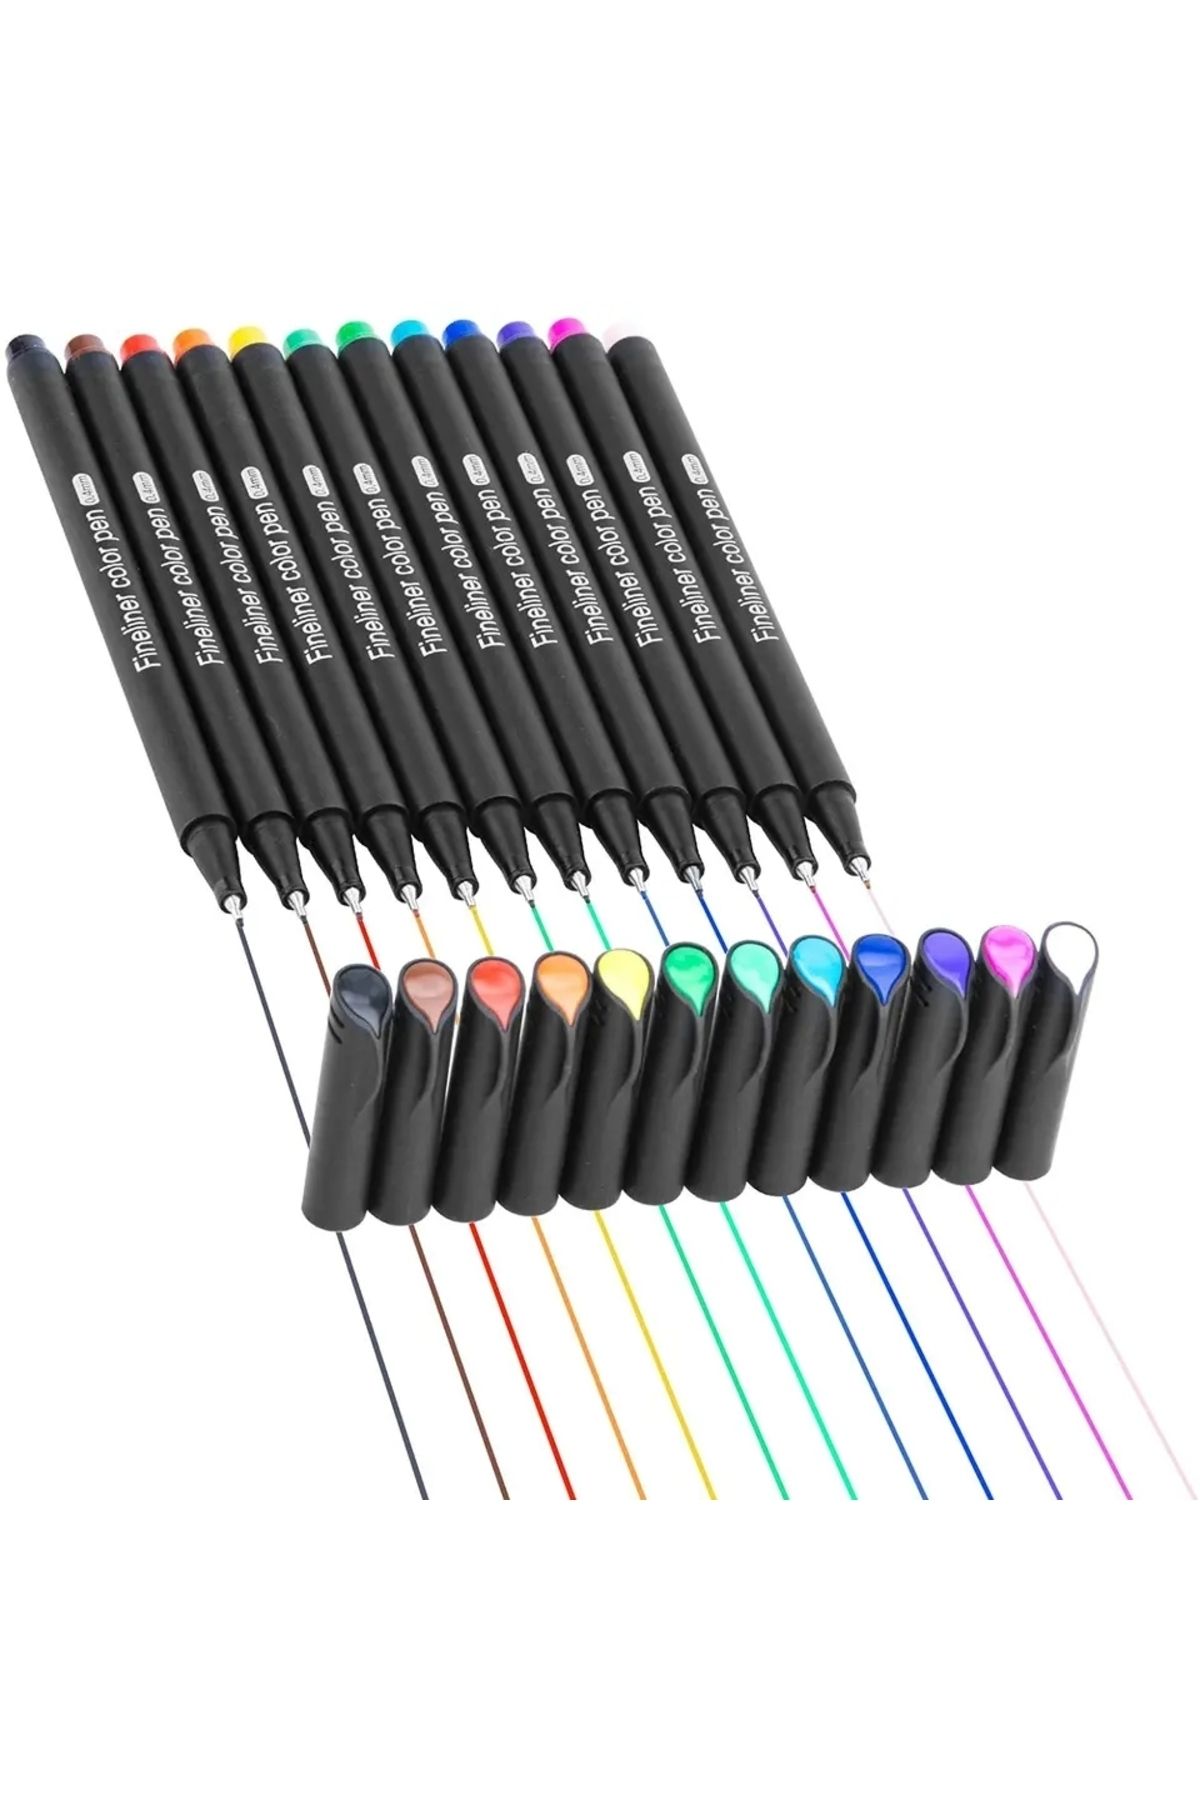 ART PROFFESİONAL Fineliner 0.4 Mm Ince Uçlu Yazı Ve Çizim Kalemi 12 Renk